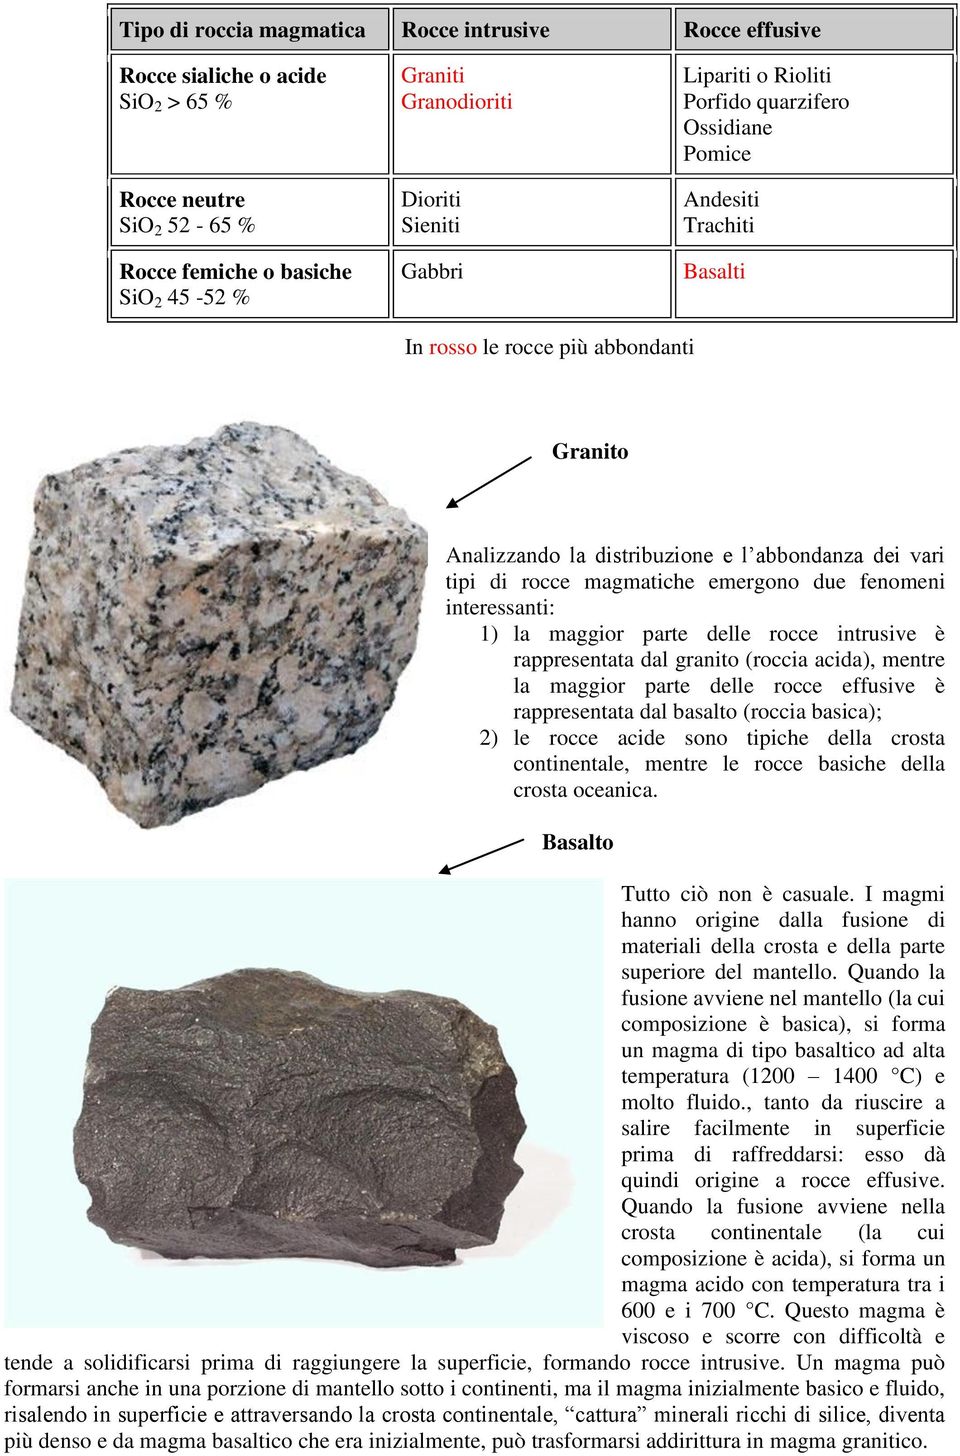 magmatiche emergono due fenomeni interessanti: 1) la maggior parte delle rocce intrusive è rappresentata dal granito (roccia acida), mentre la maggior parte delle rocce effusive è rappresentata dal